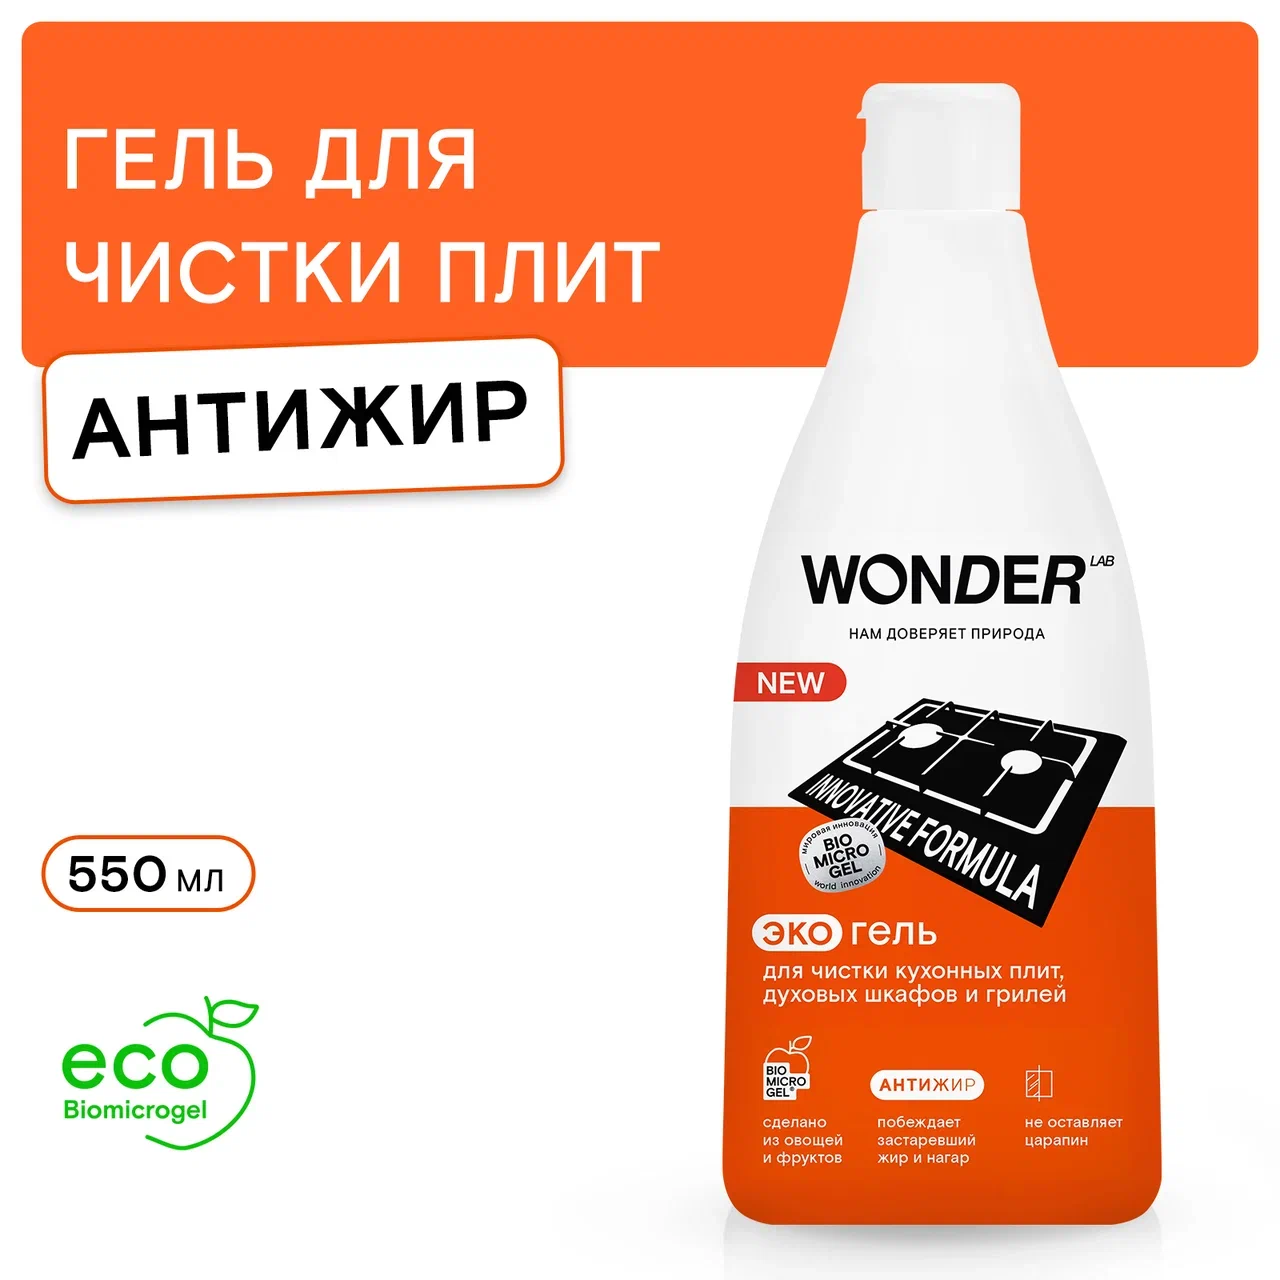 Средство чистящее Wonder Lab Антижир для плит, духовых шкафов, грилей 550 мл, купить в Москве, цены в интернет-магазинах на Мегамаркет